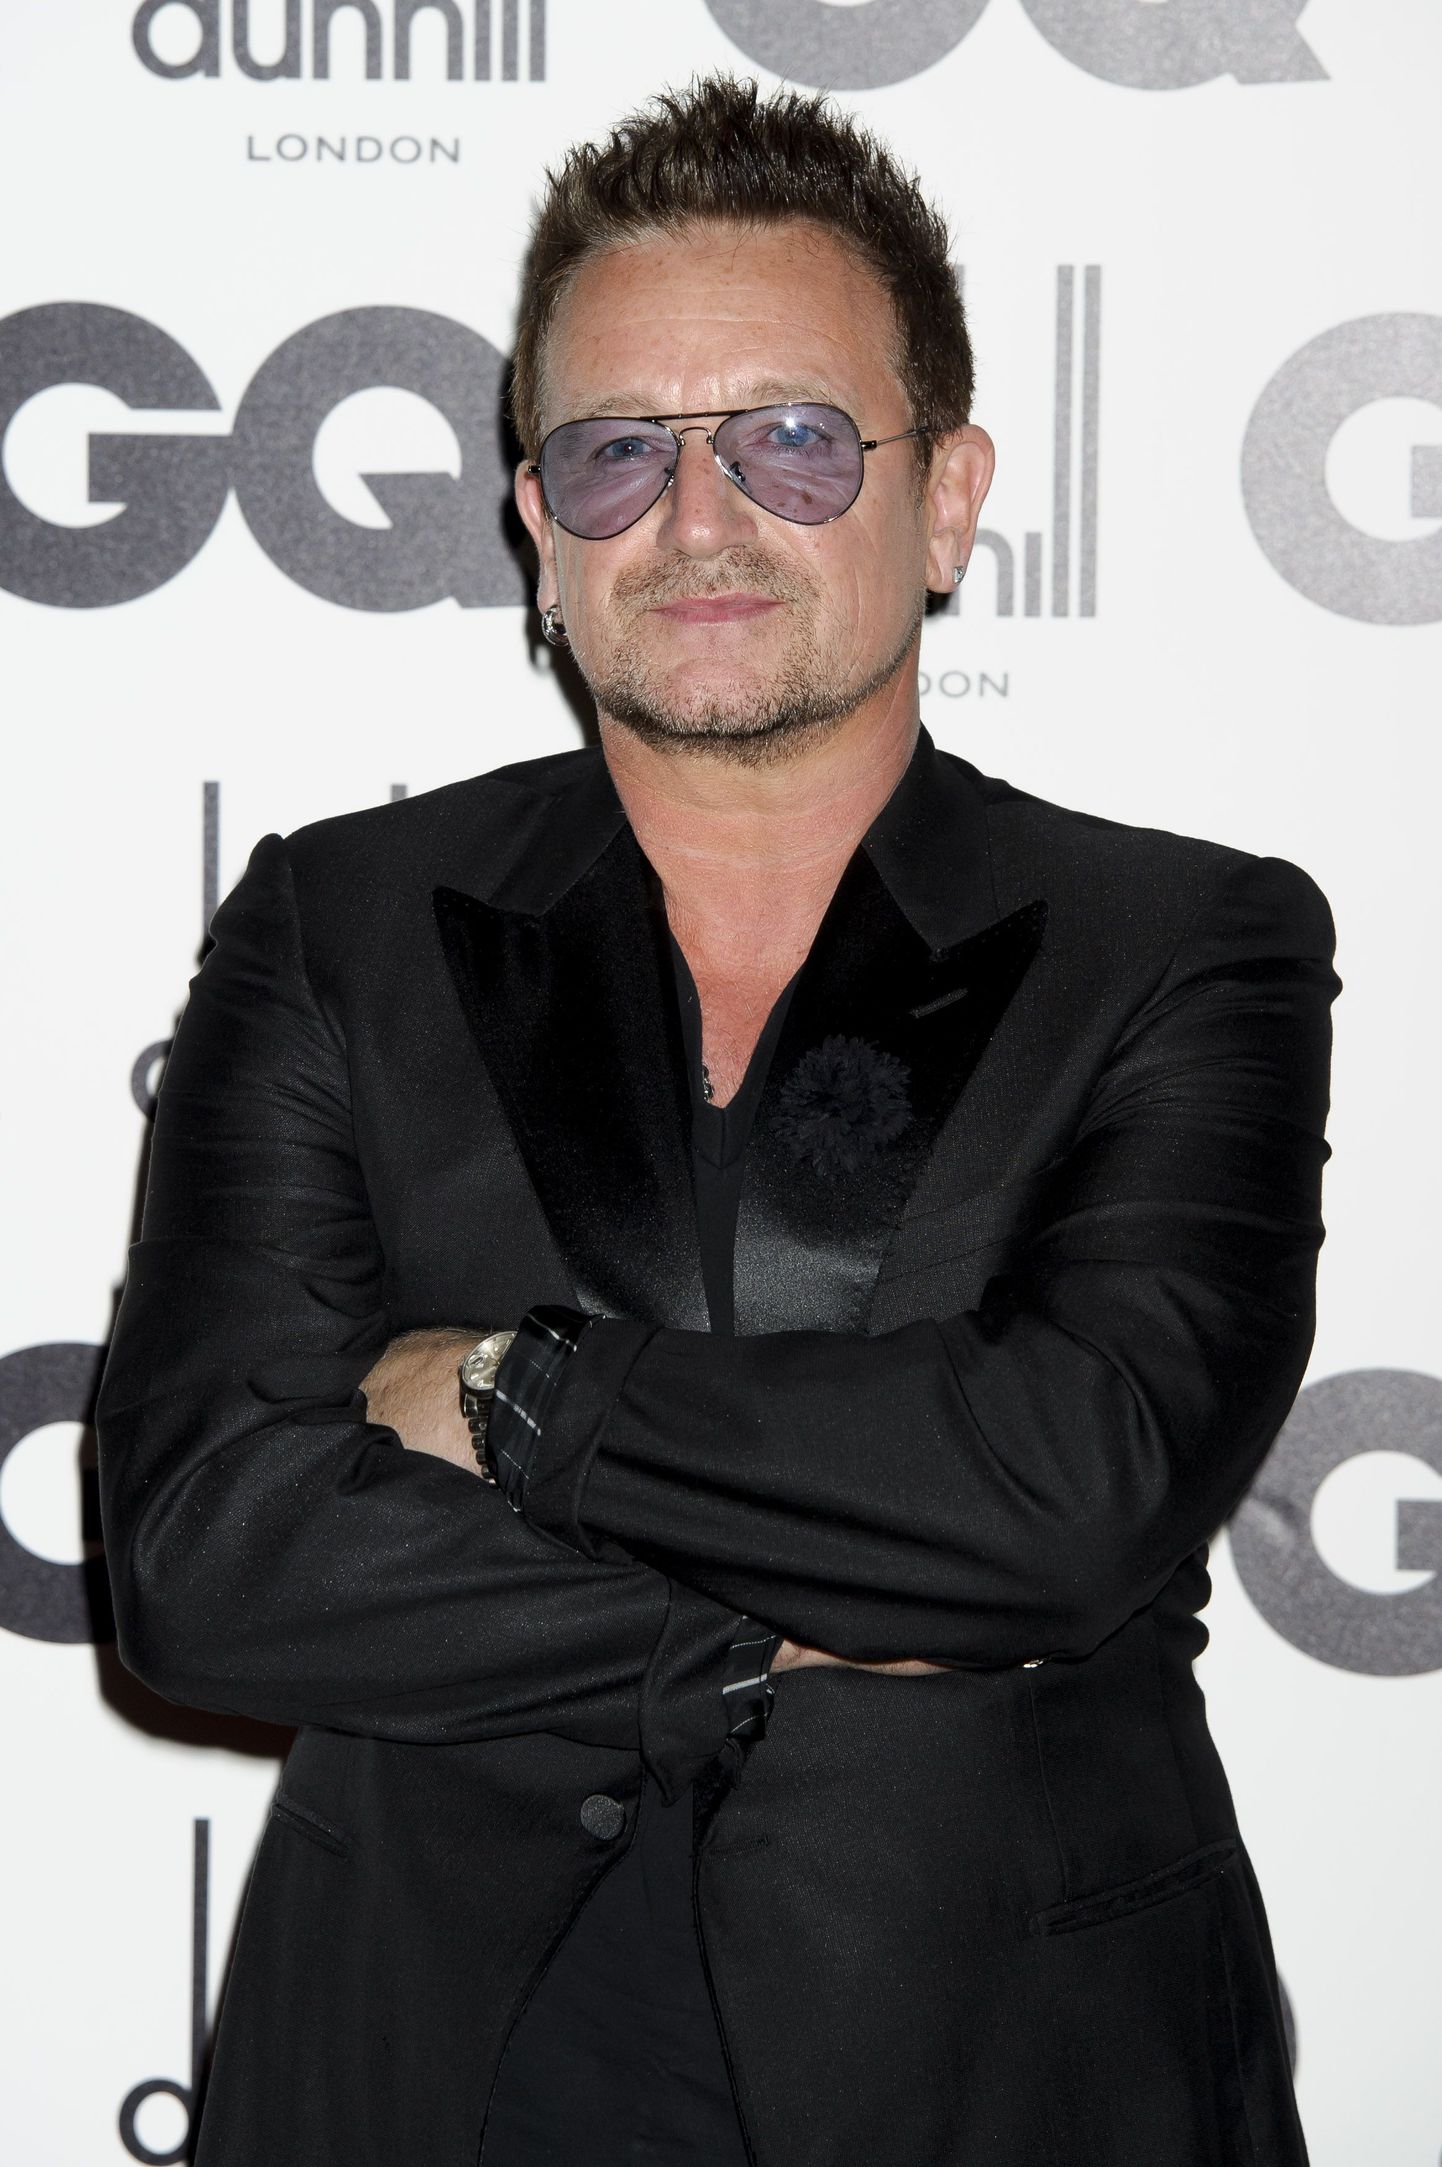 Briti laulja Bono